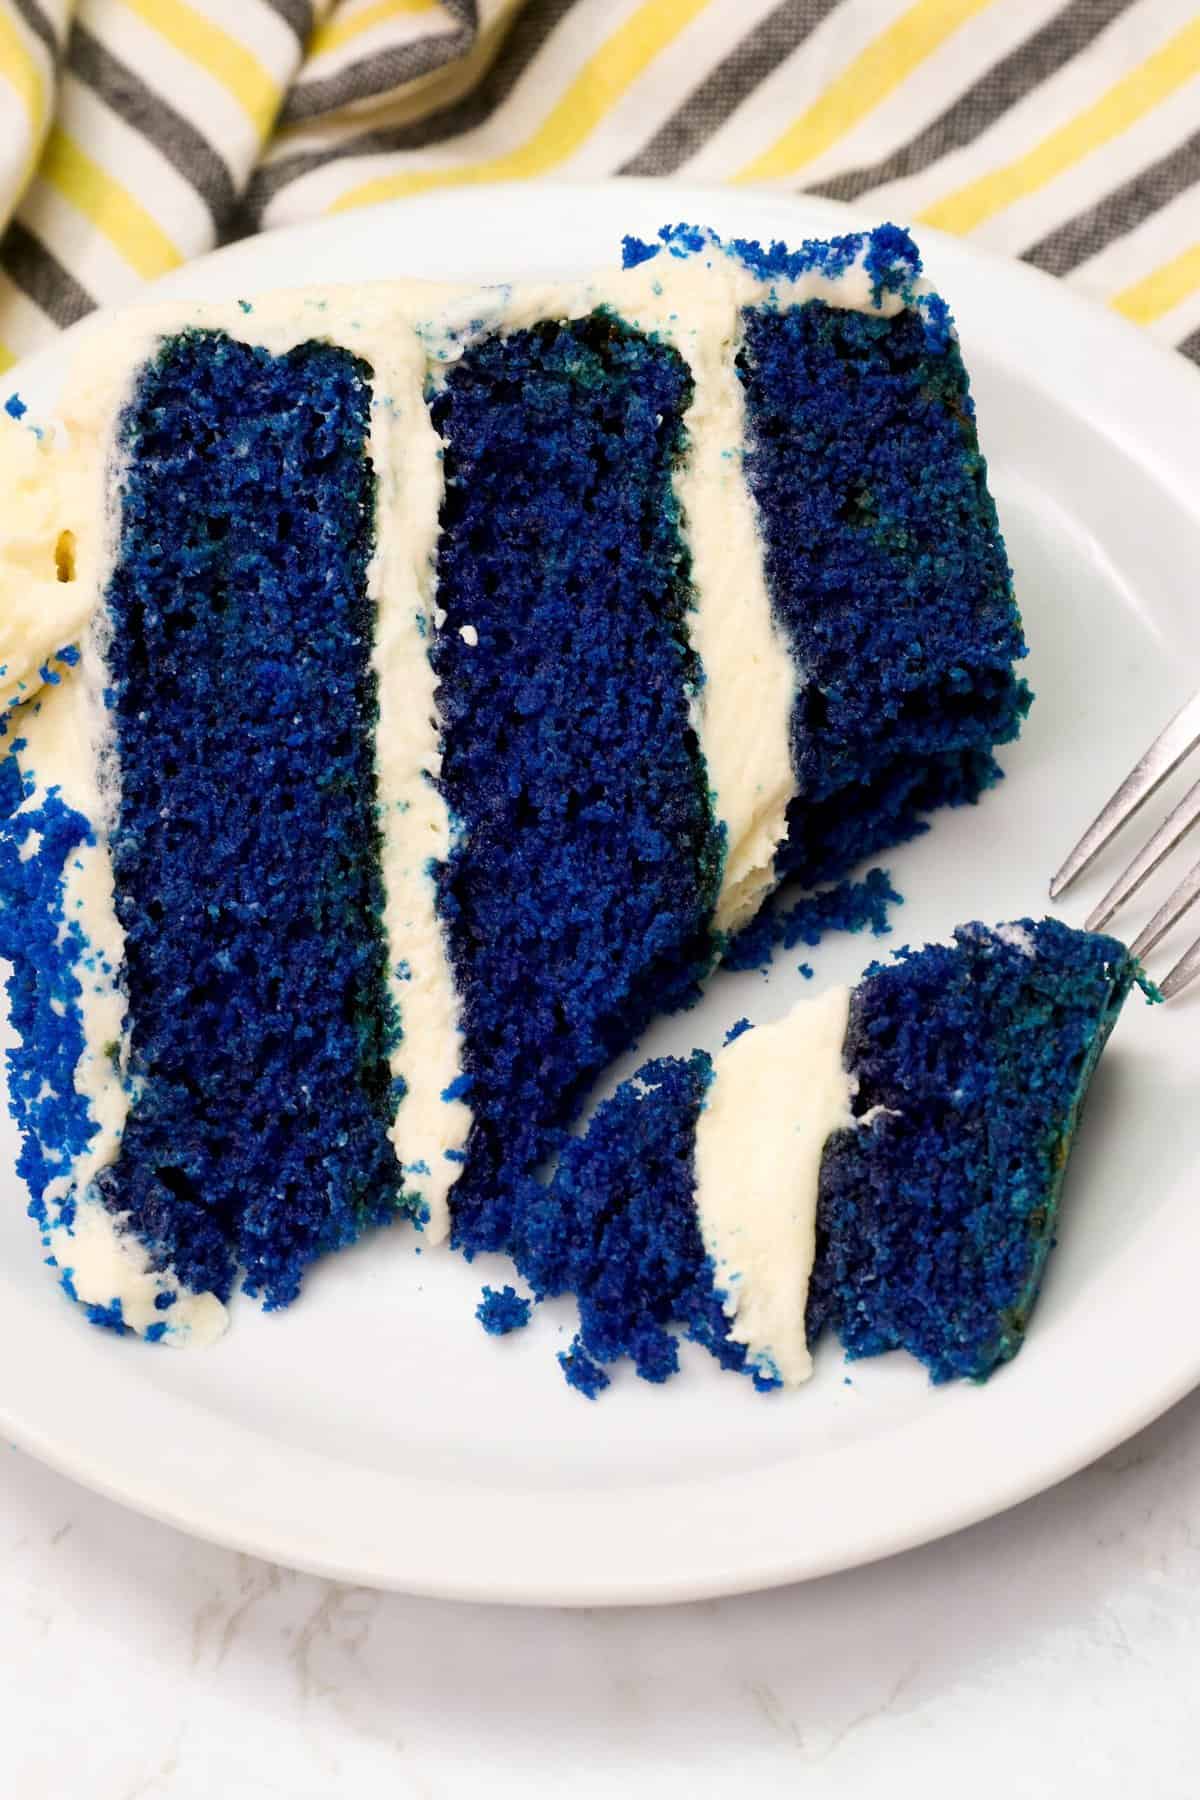 Enjoying a bite of surreal blue velvet cake